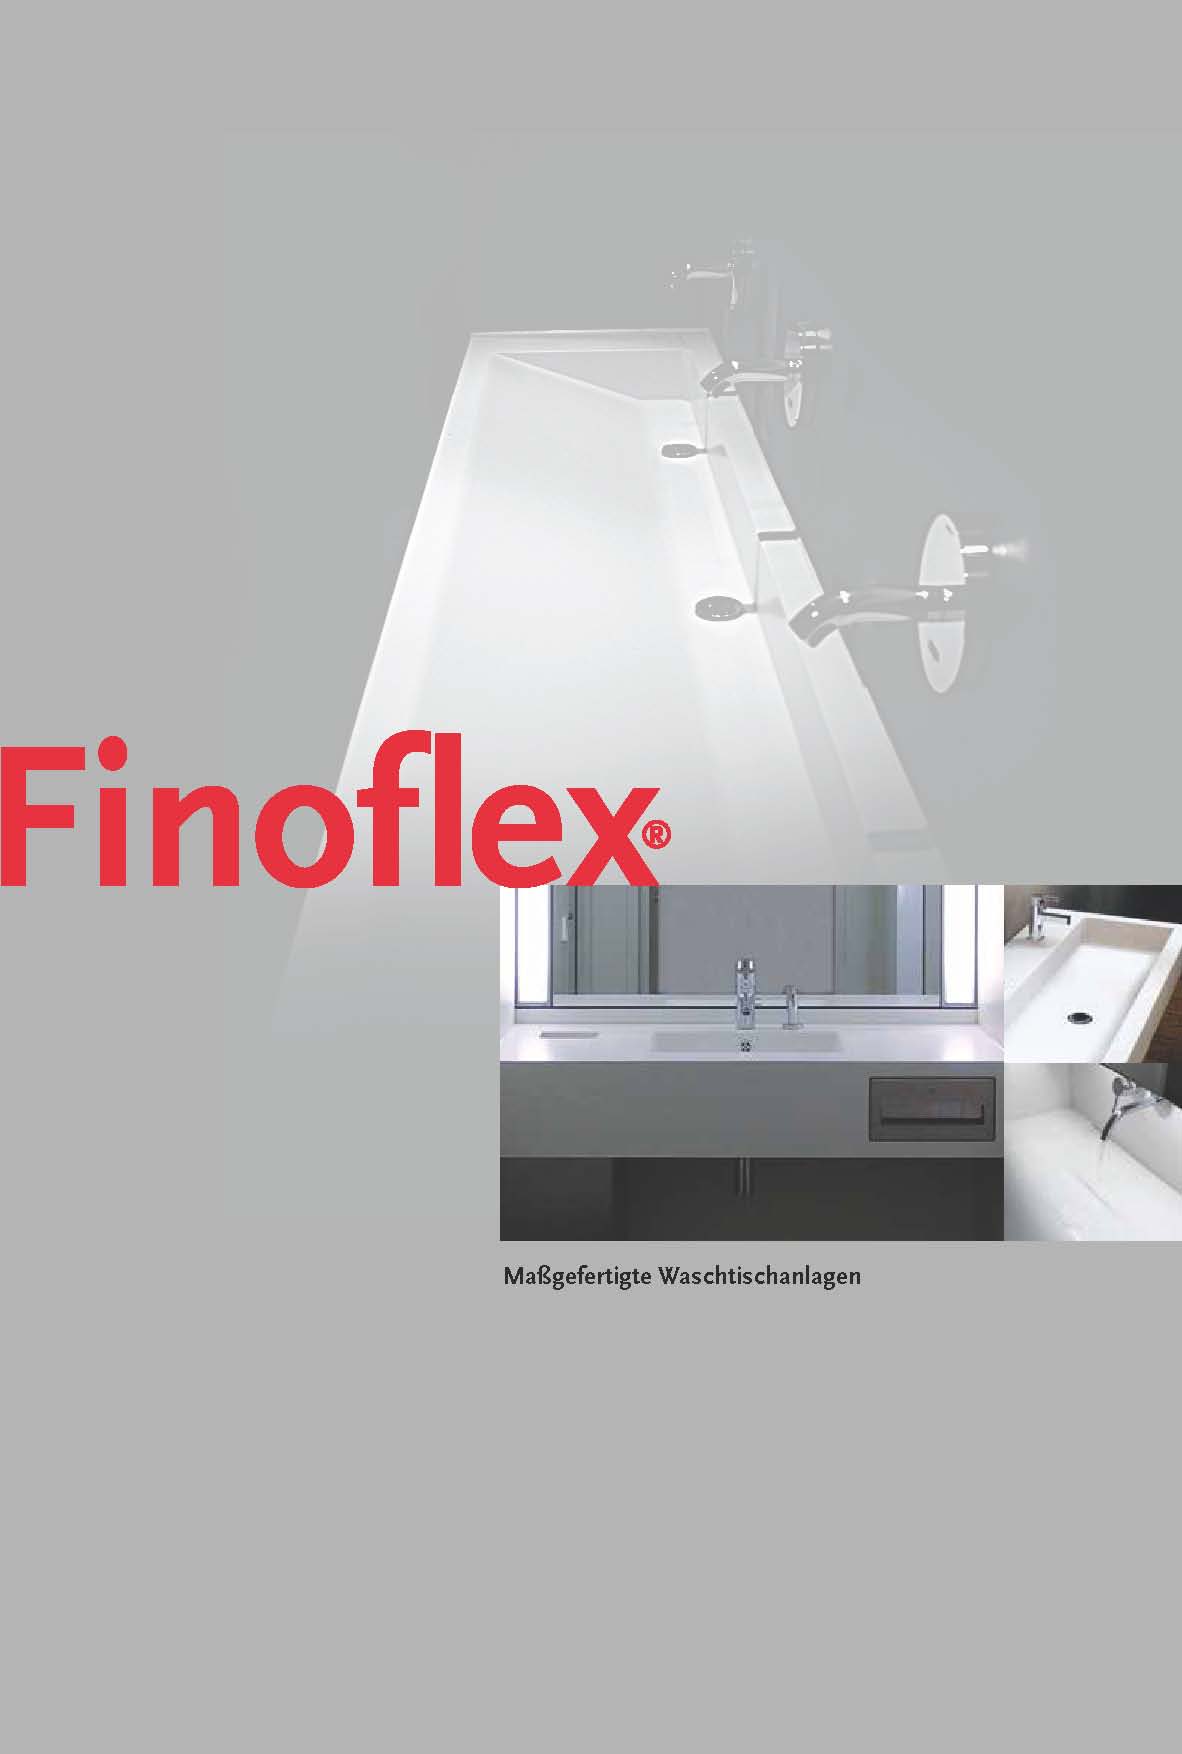 Finoflex Waschtischanlagen, Waschtische und Waschrinnen nach Maß